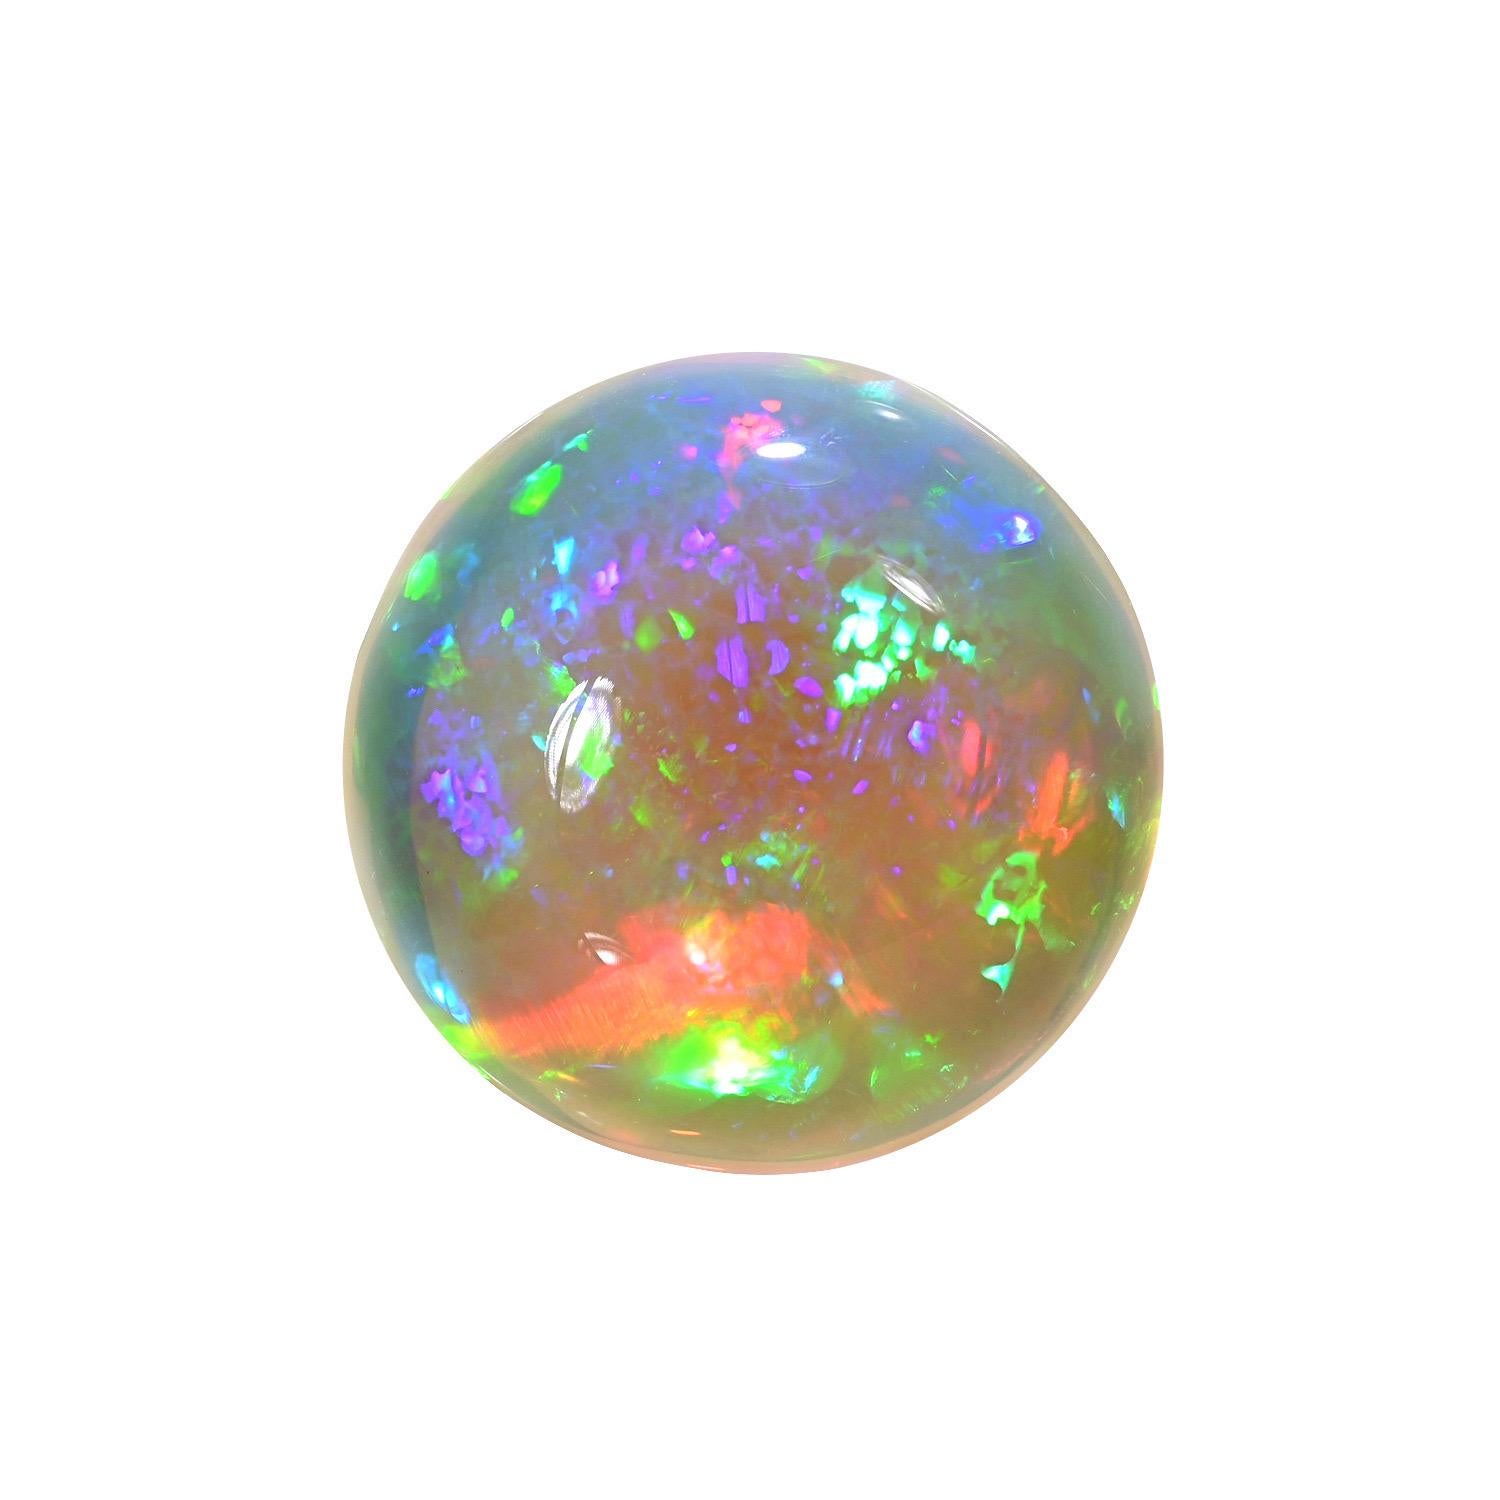 Opale éthiopienne ronde naturelle de 29,98 carats, offerte non montée à un connaisseur de pierres précieuses.
Les retours sont acceptés et pris en charge dans les sept jours suivant la livraison.
Nous offrons d'excellents travaux de bijouterie sur